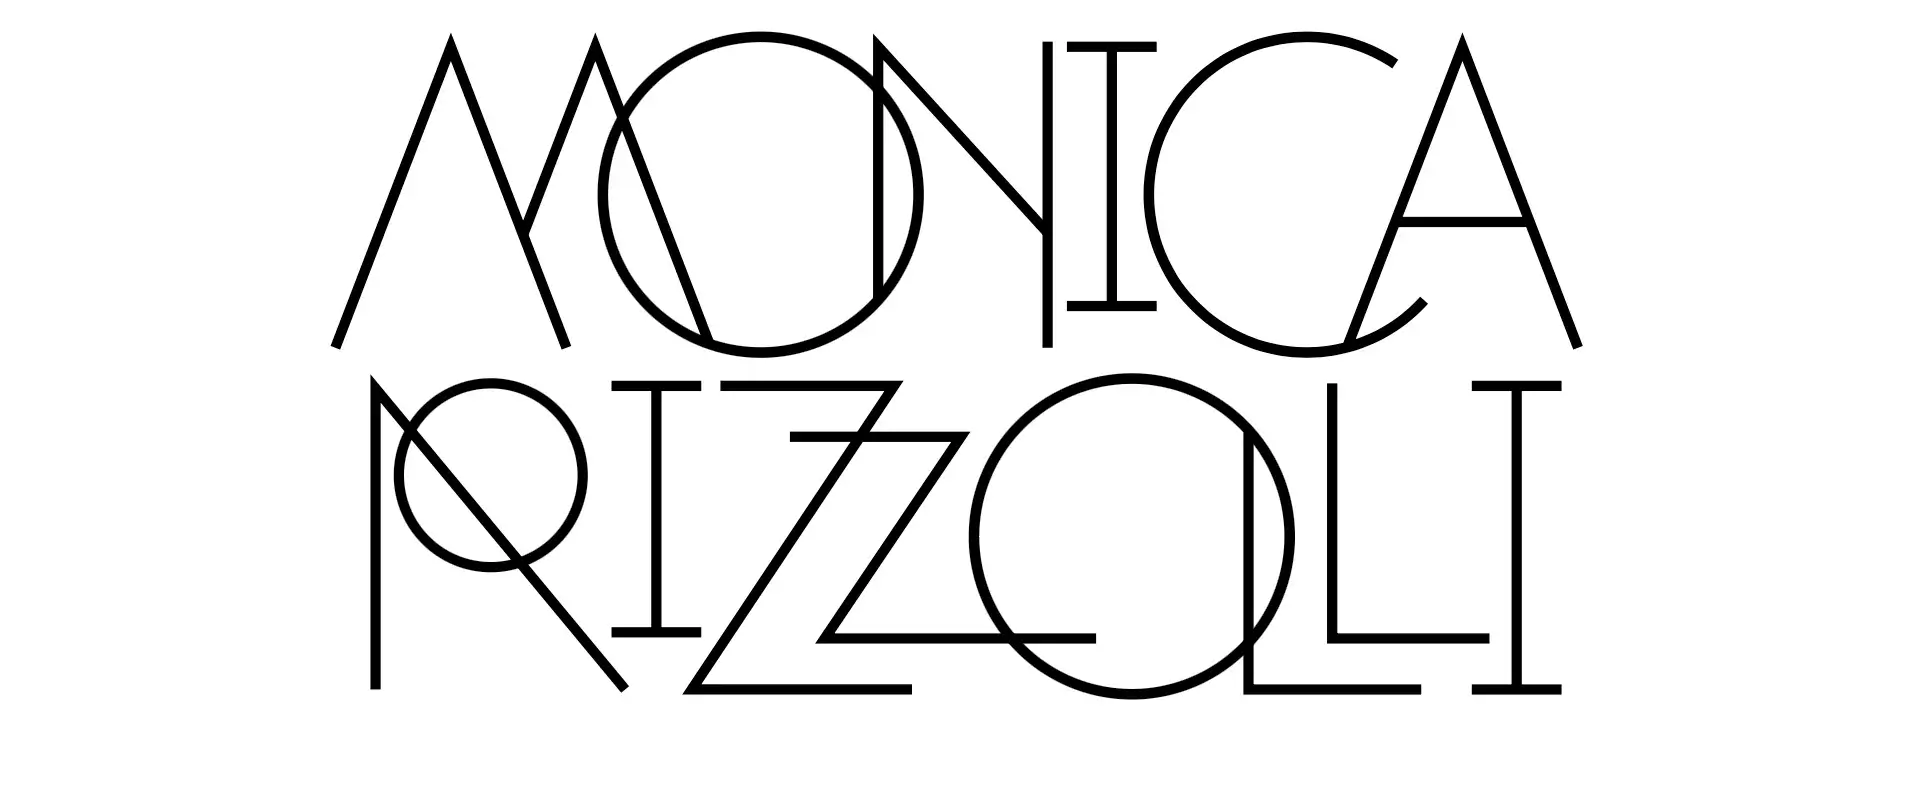 13. Monica Rizzolli